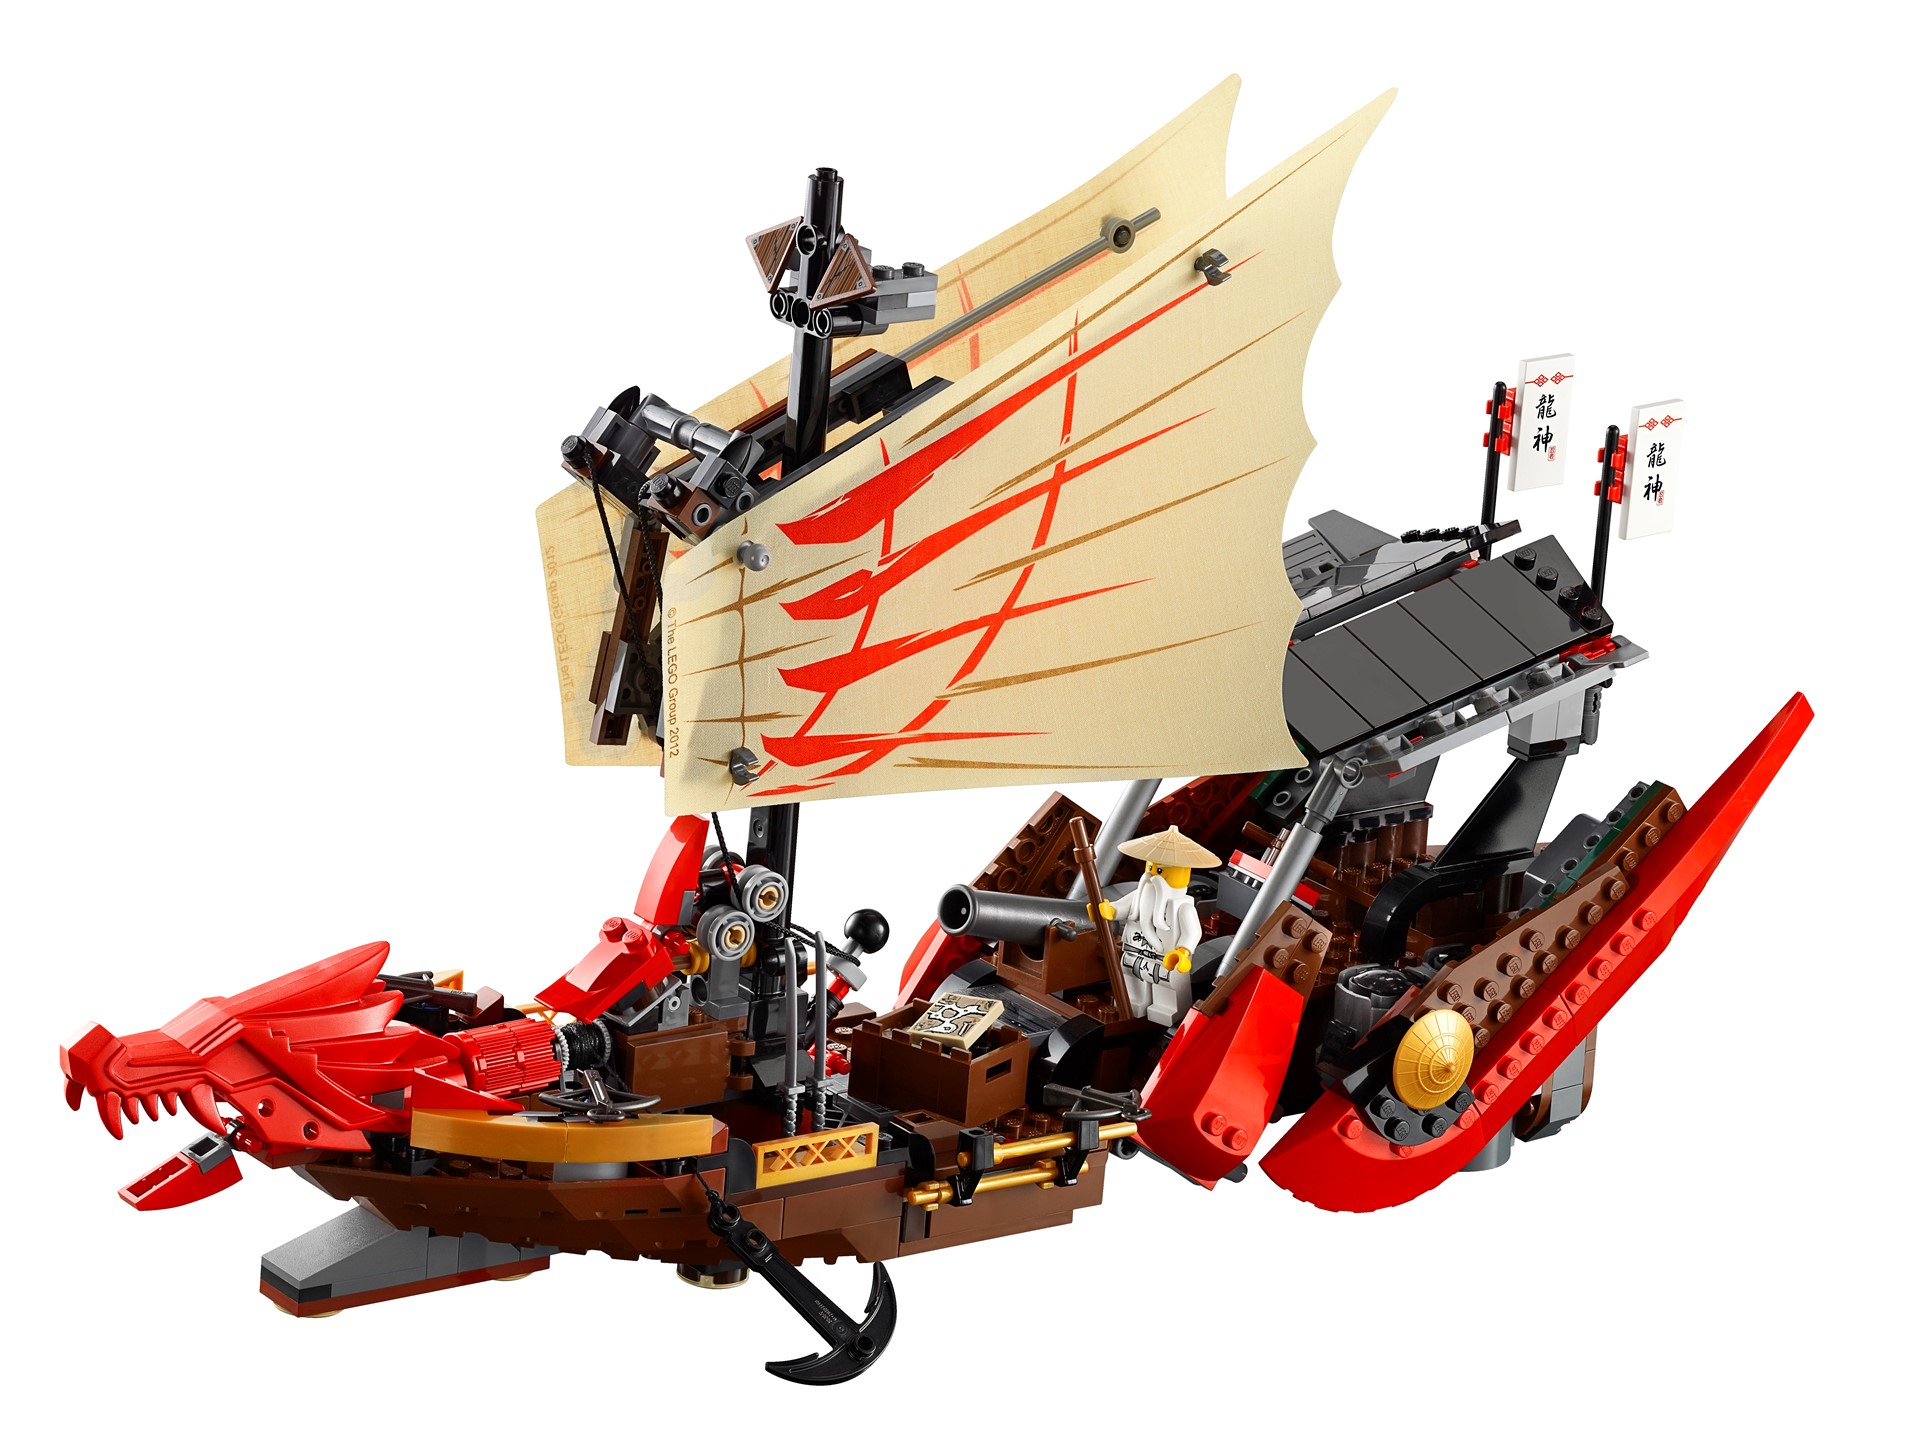 lego boat ninjago